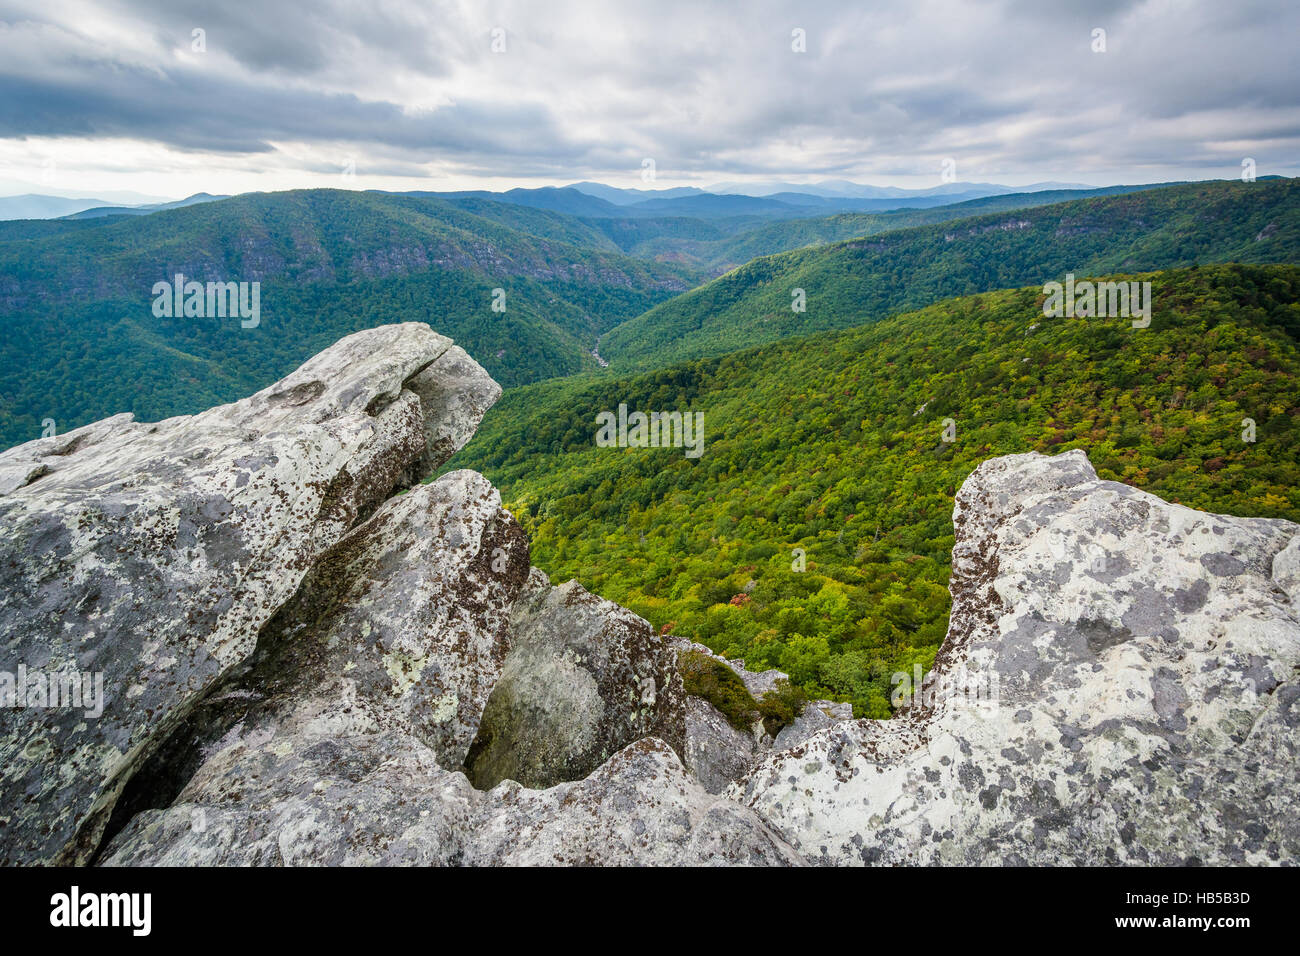 Vista de la montaña de Linville Gorge de carey, en el Bosque Nacional de Pisgah, Carolina del Norte. Foto de stock